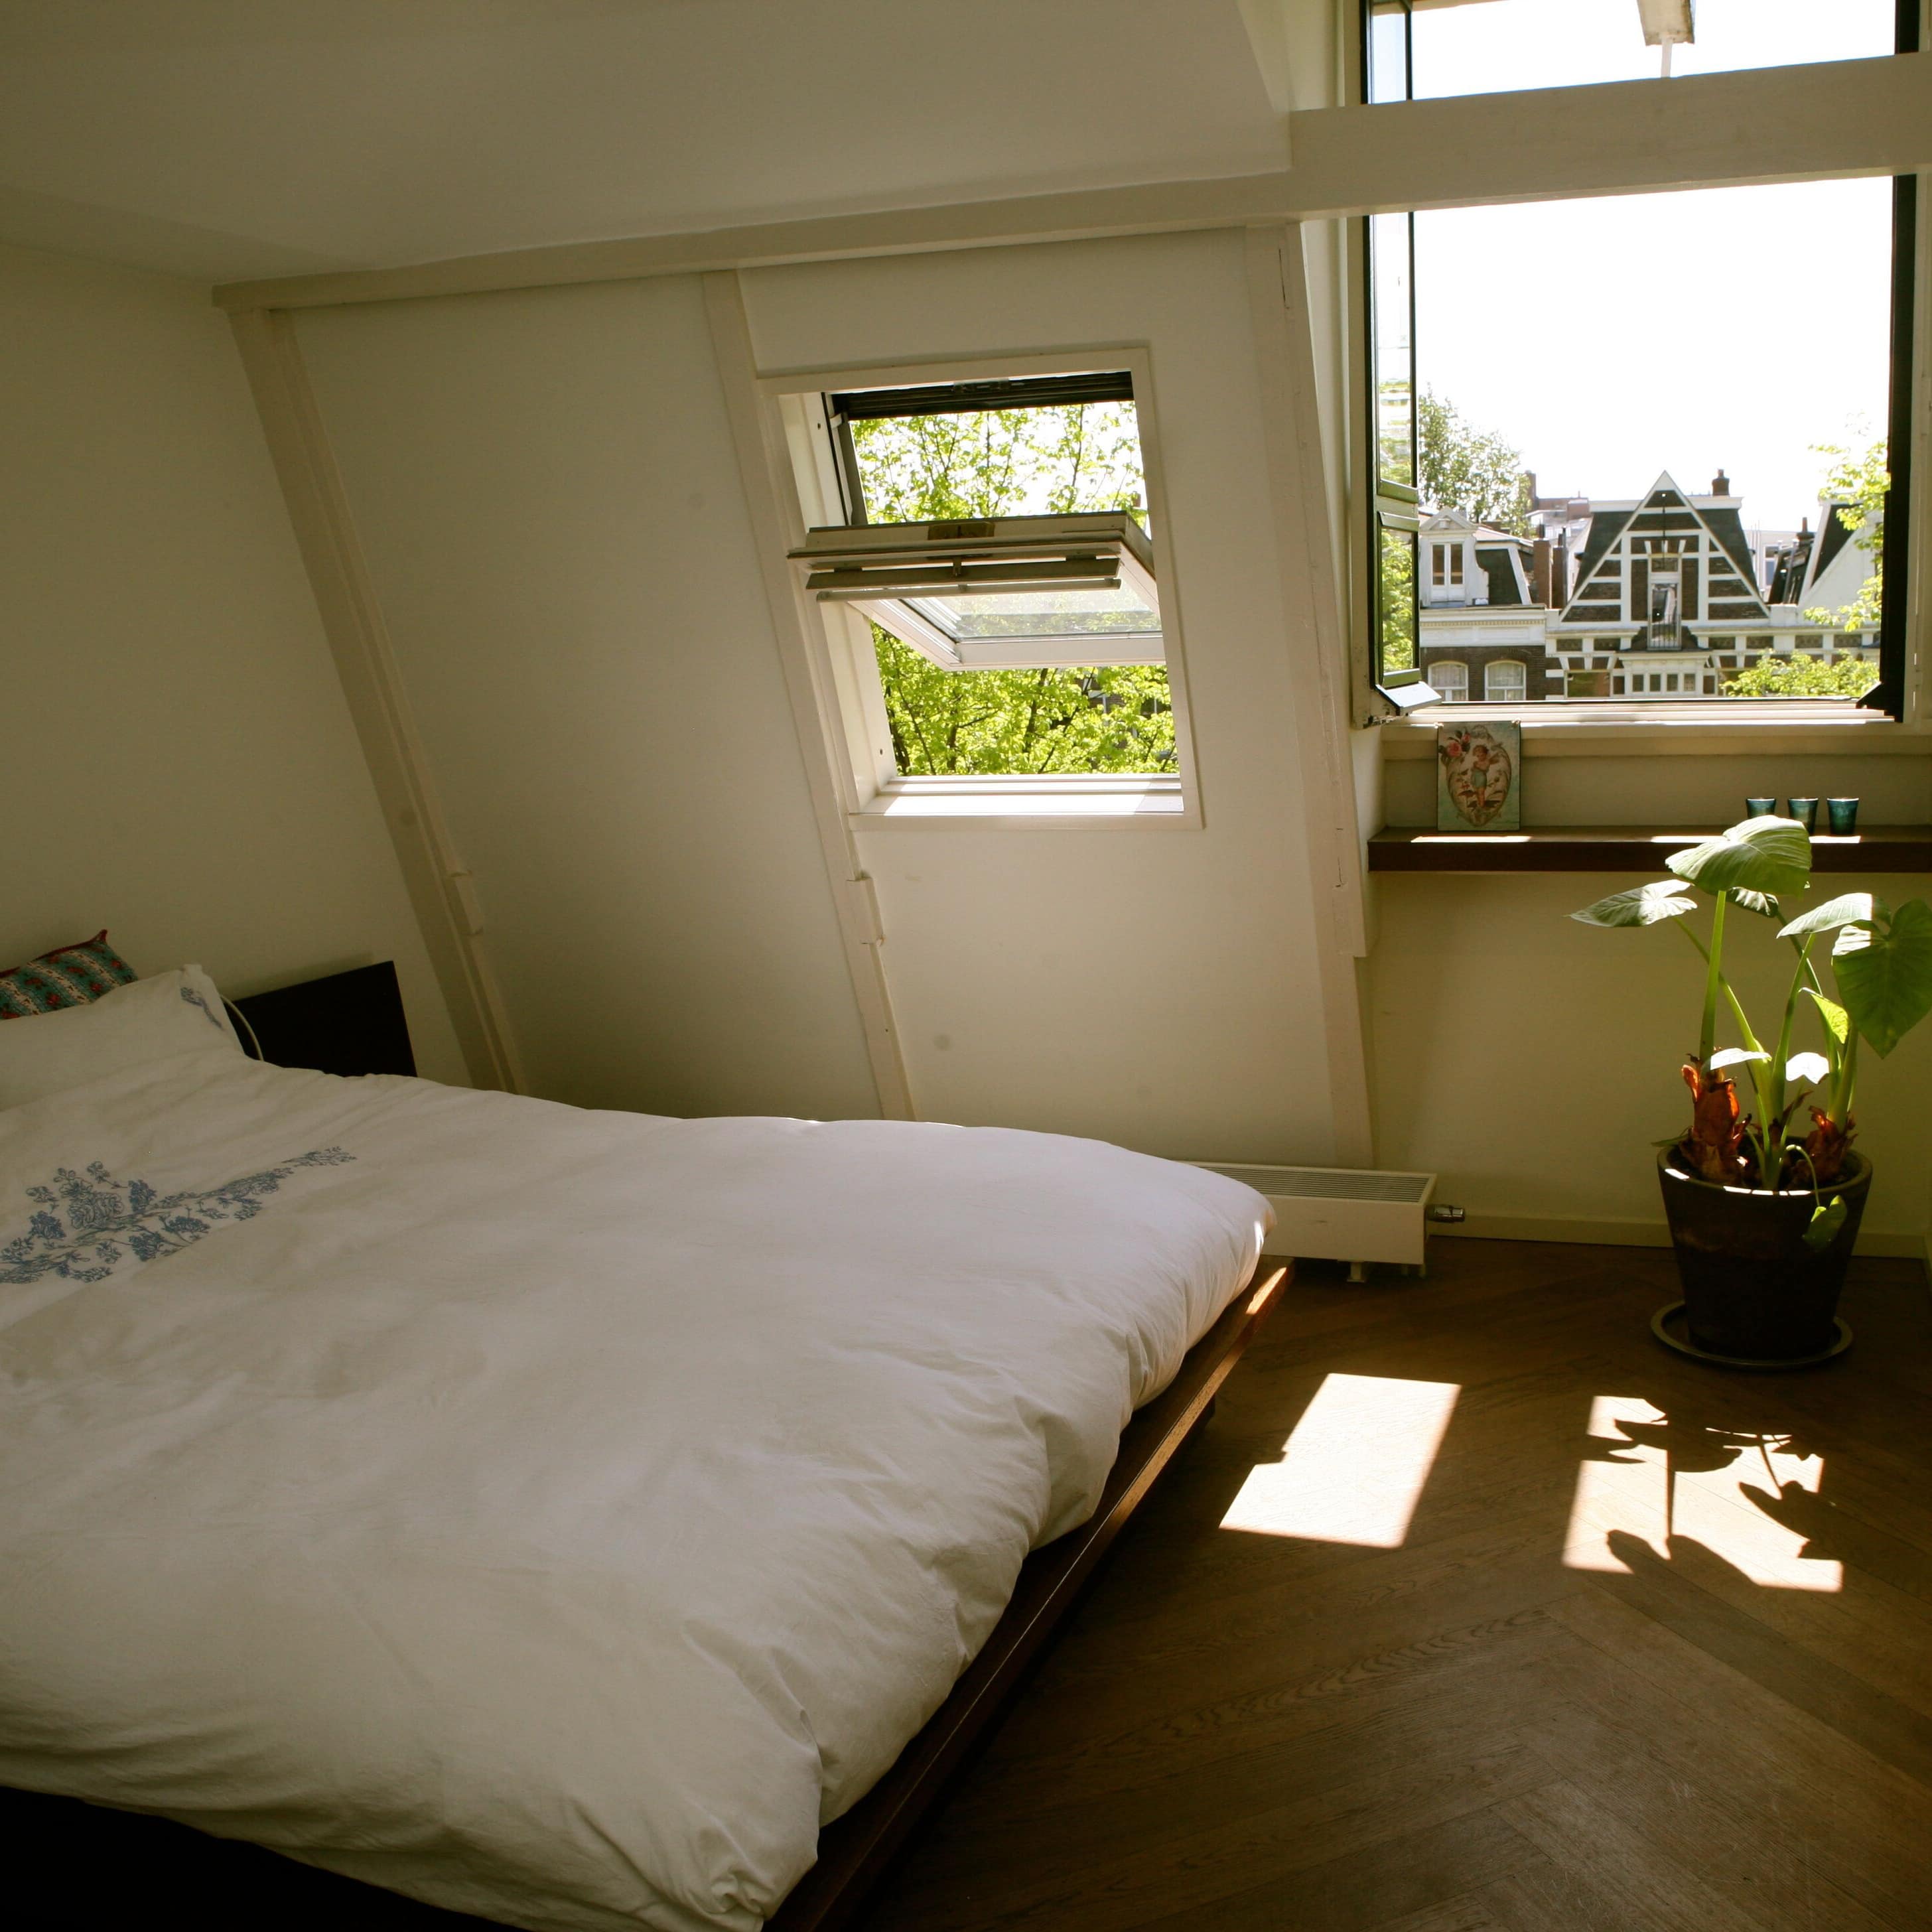 Ferienwohnung in Zandvoort – gemütliches Schlafzimmer unter der Dachschräge mit Pflanze und Blick auf typisch niederländische Giebel